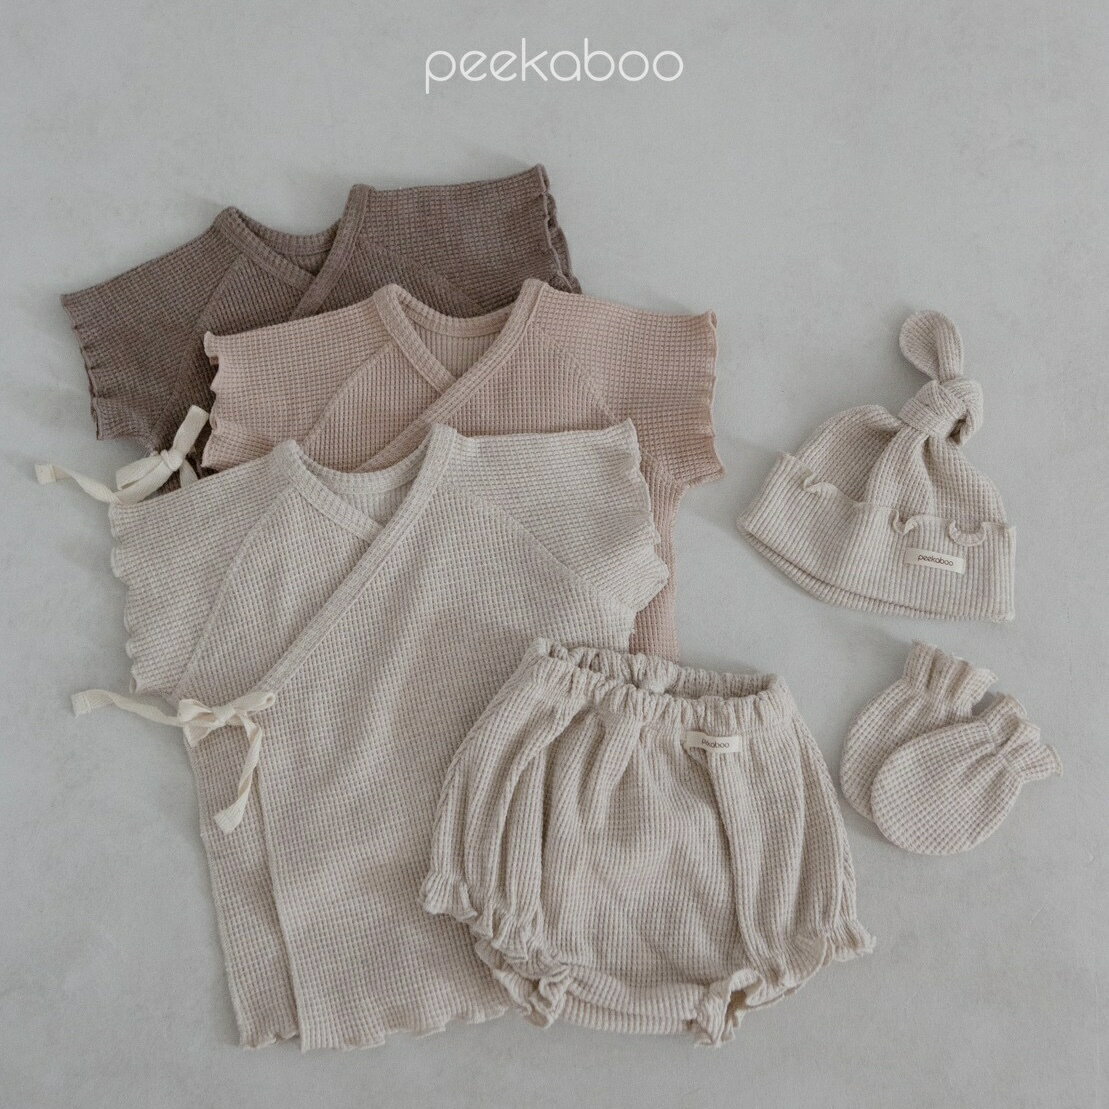  peekaboo-newborn Yes newborn set V j[{[tHg btn [ oYj މ@ ؍q@؍ǂ